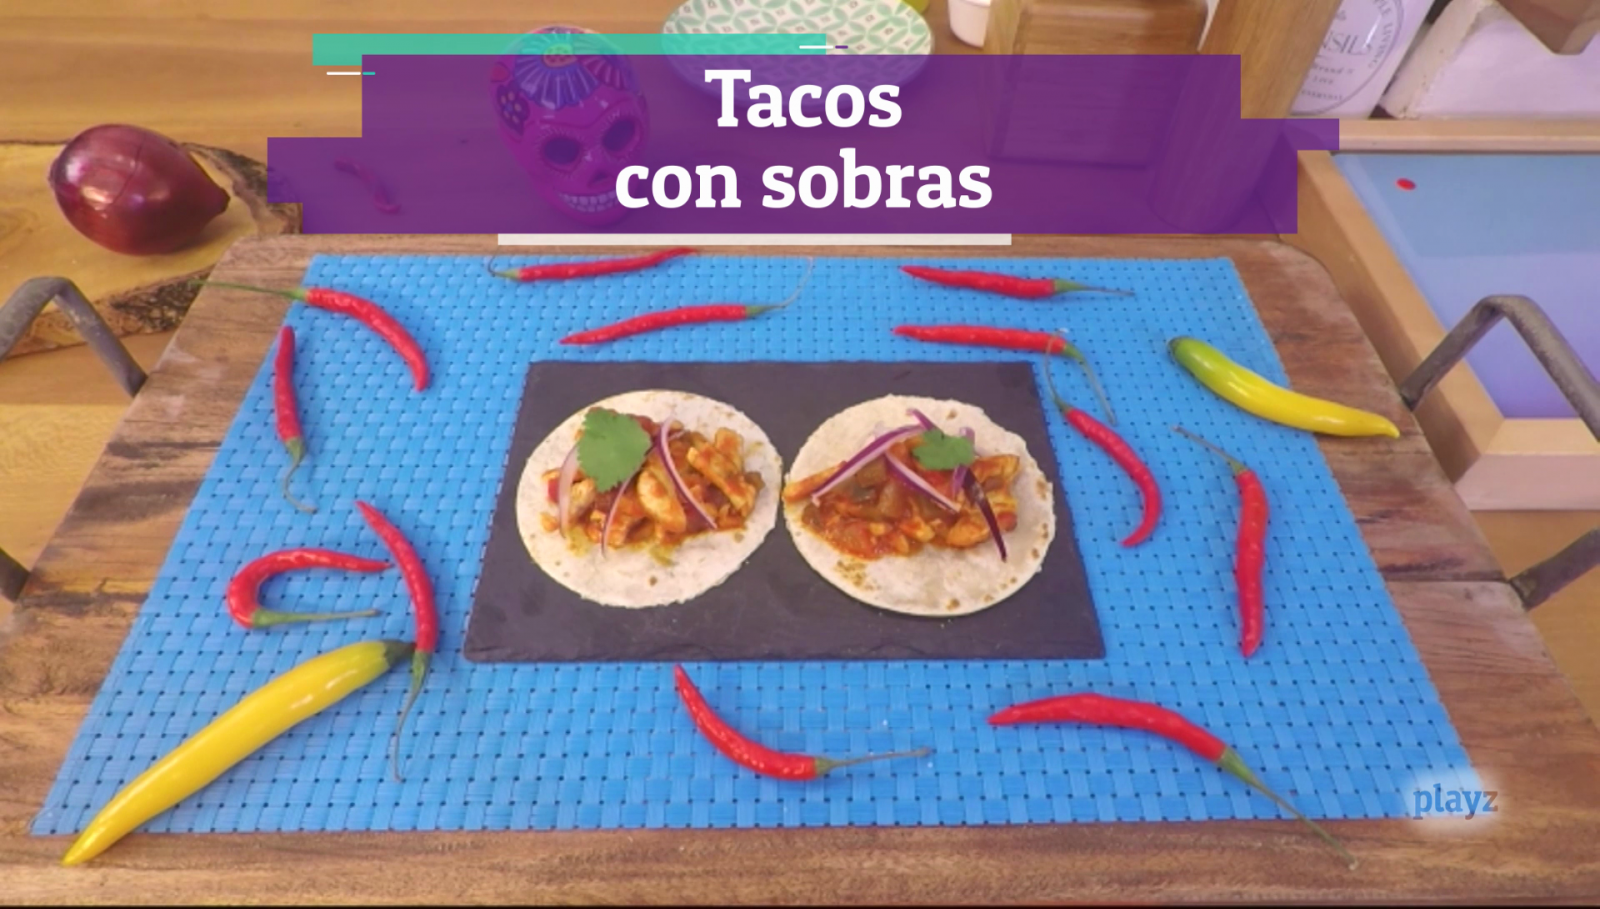 Playchez - Receta: tacos mexicanos con sobras